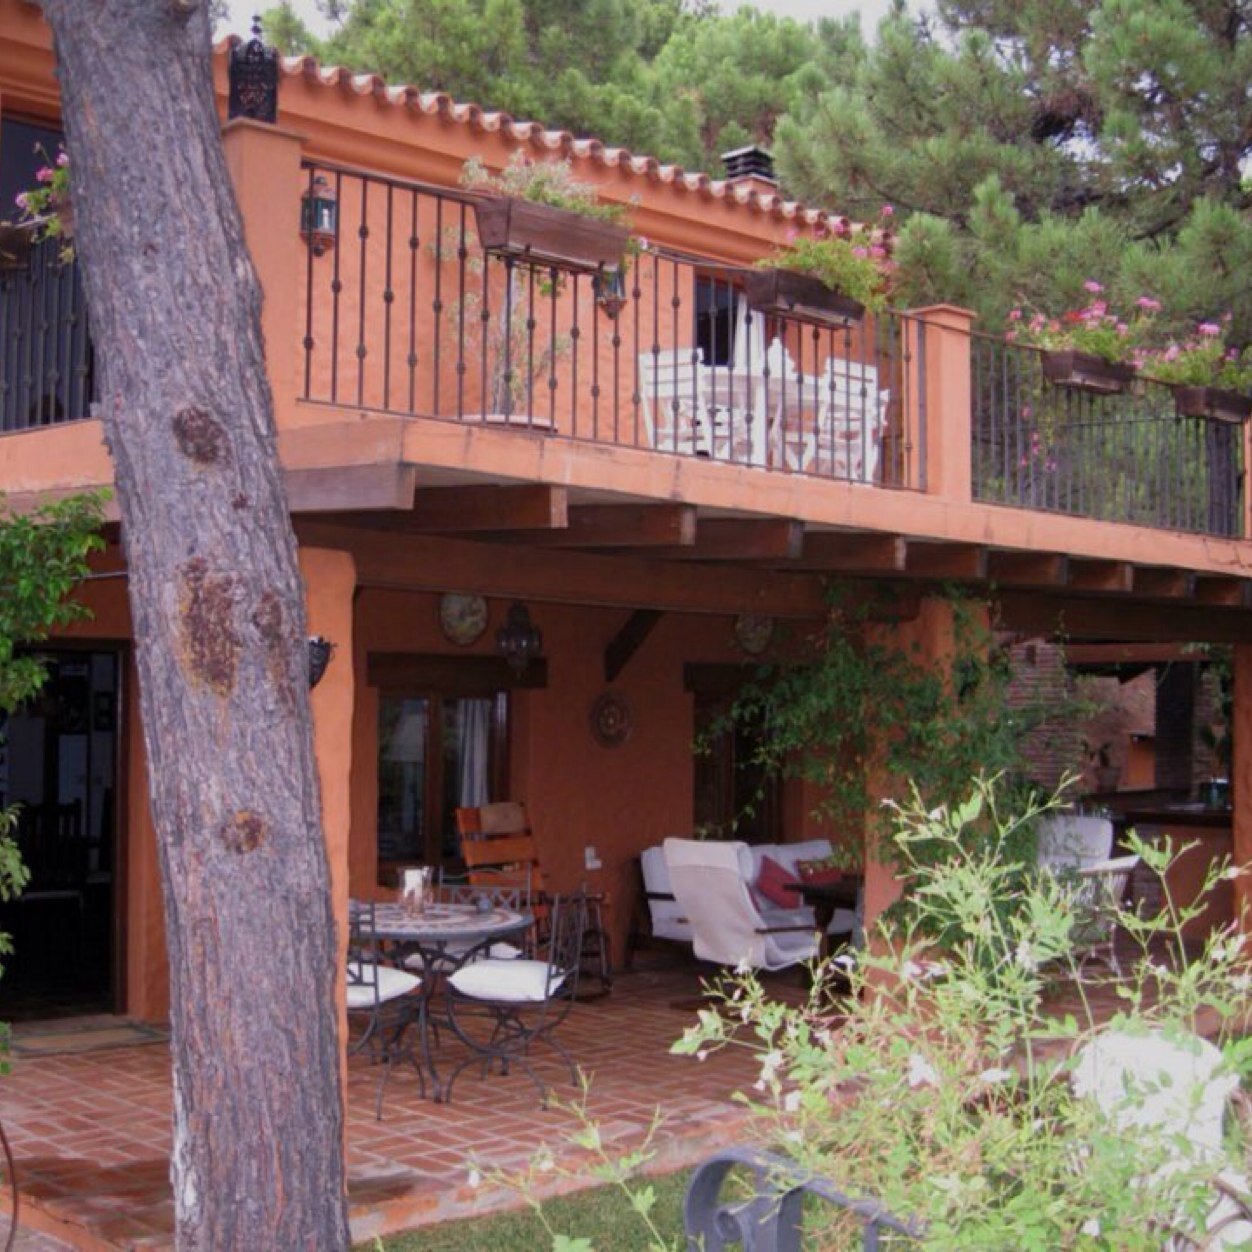 Casa de campo con vistas al Pantano de la Concepción (Marbella) se alquila para rodajes, eventos y estancias de corta y larga duración.